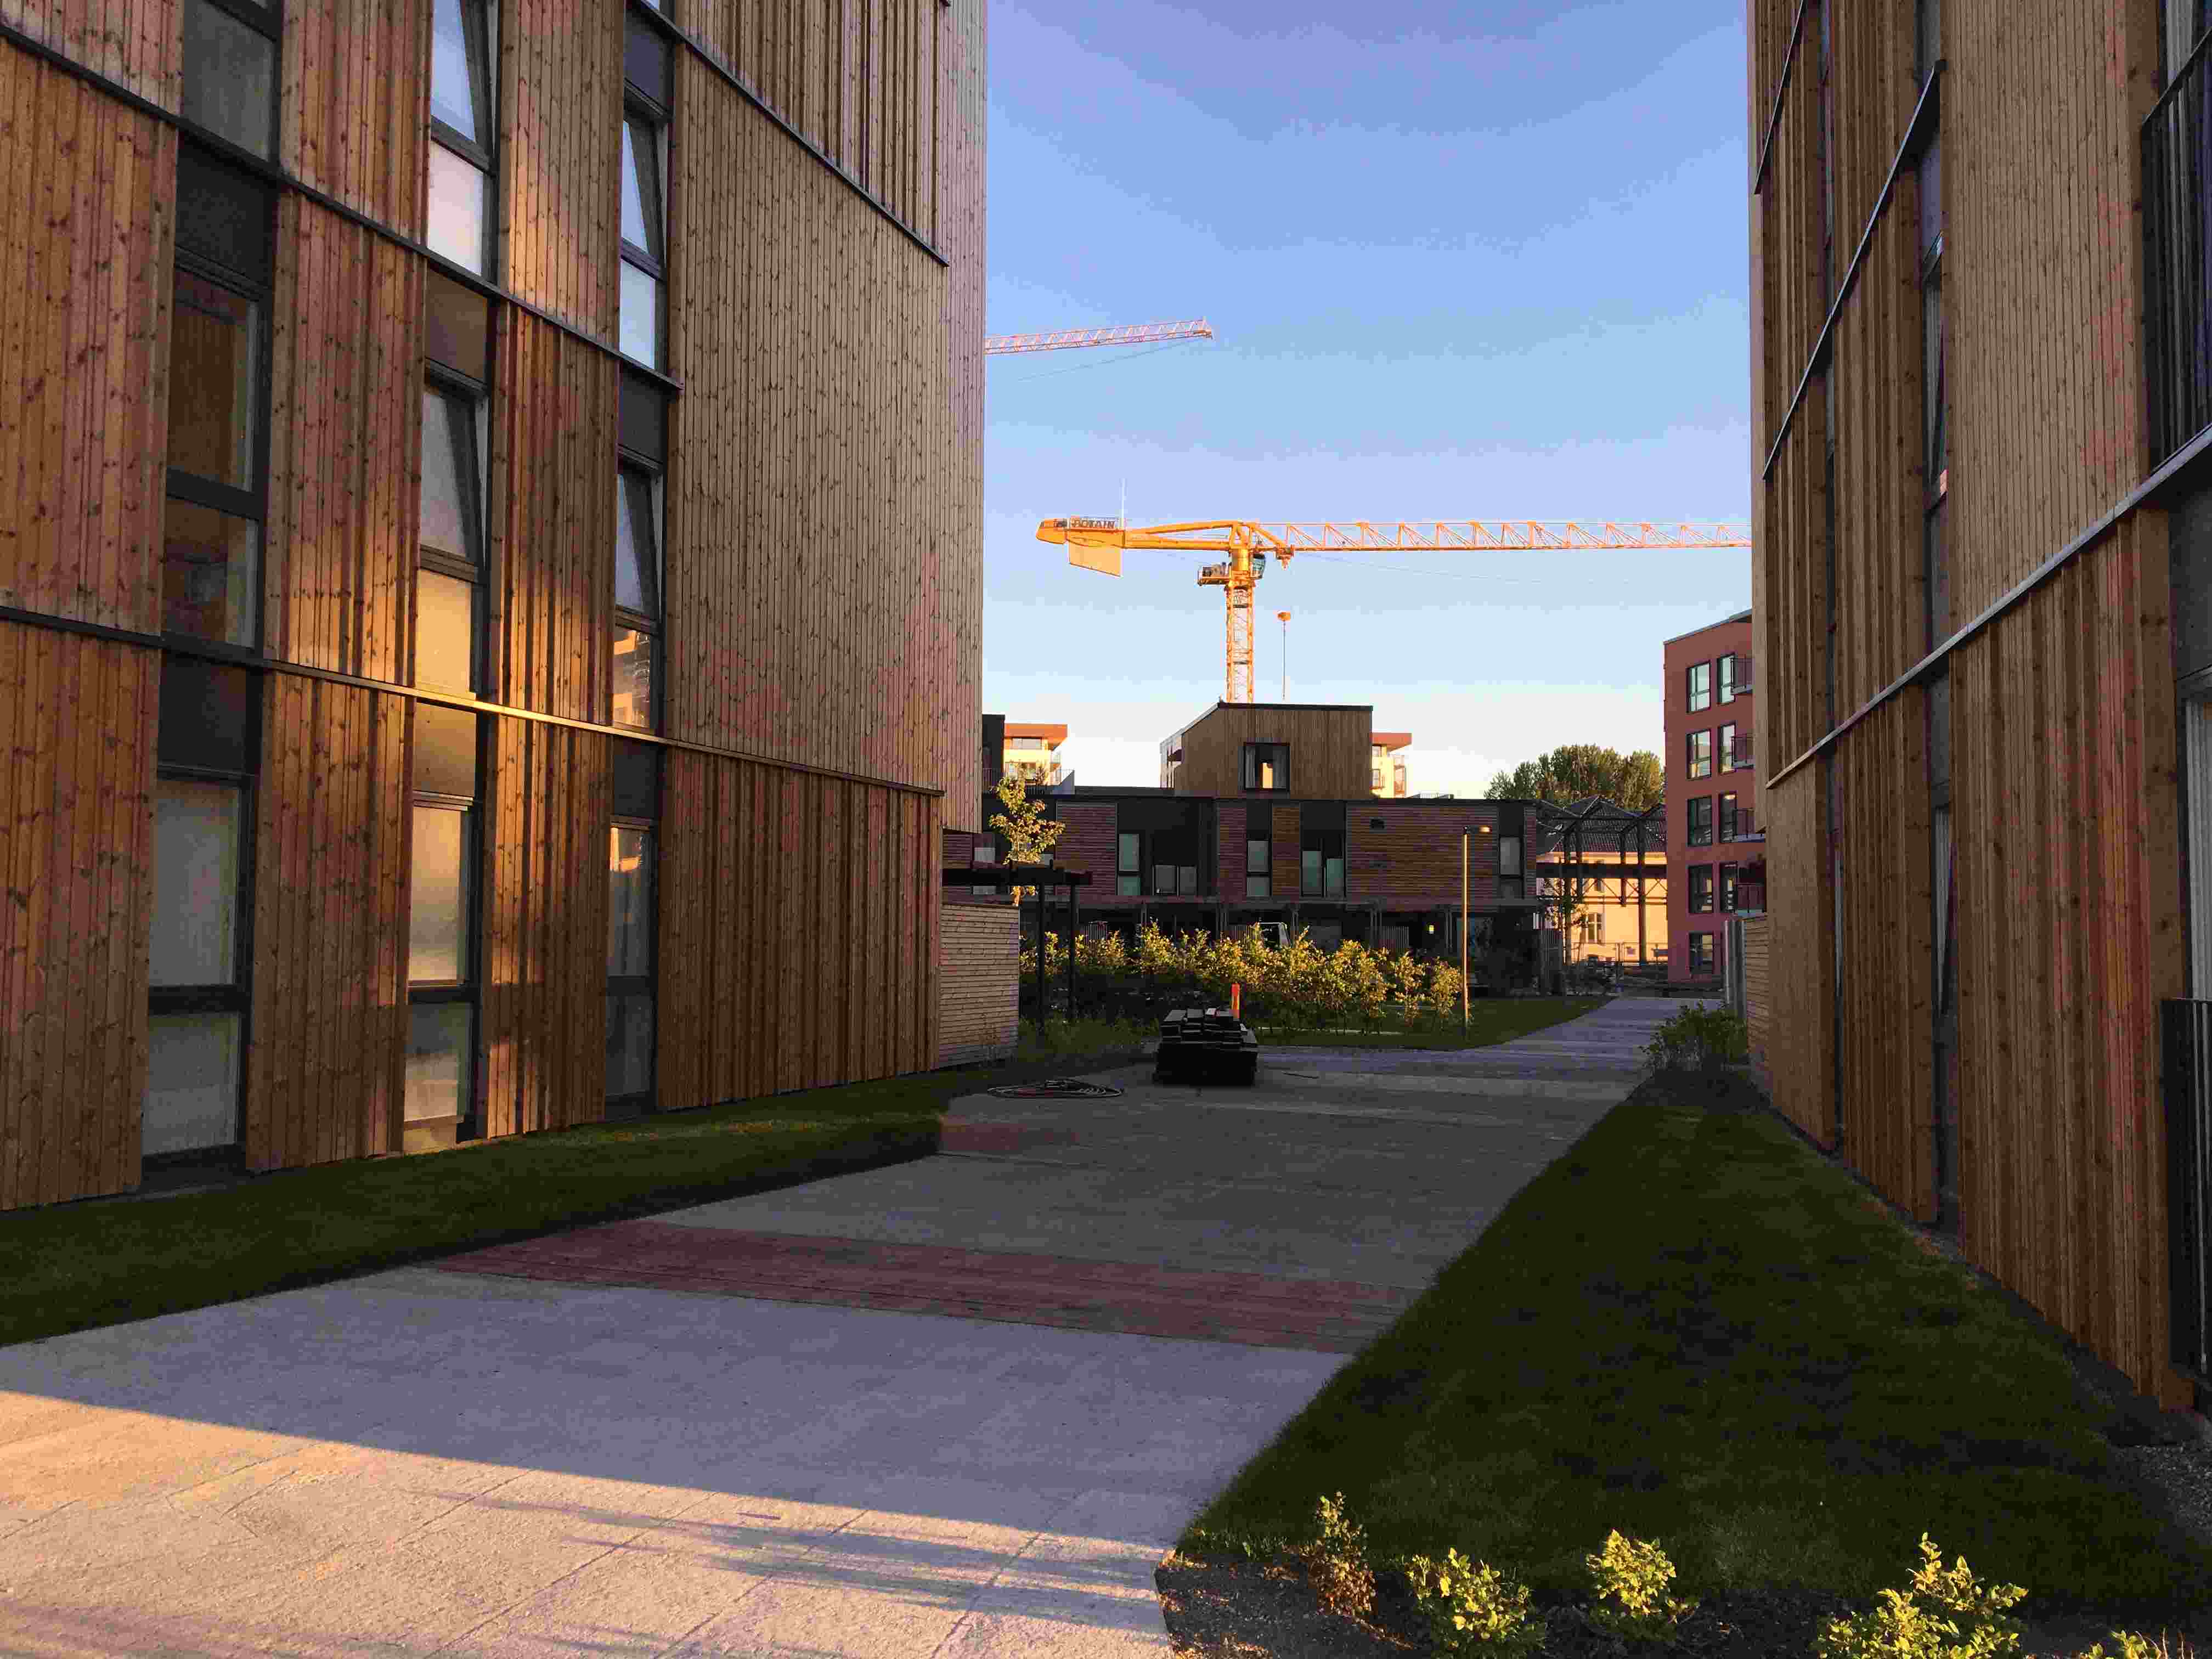 Bilde som er tatt mellom to bygg på Lilleby med en byggekran i horisonten